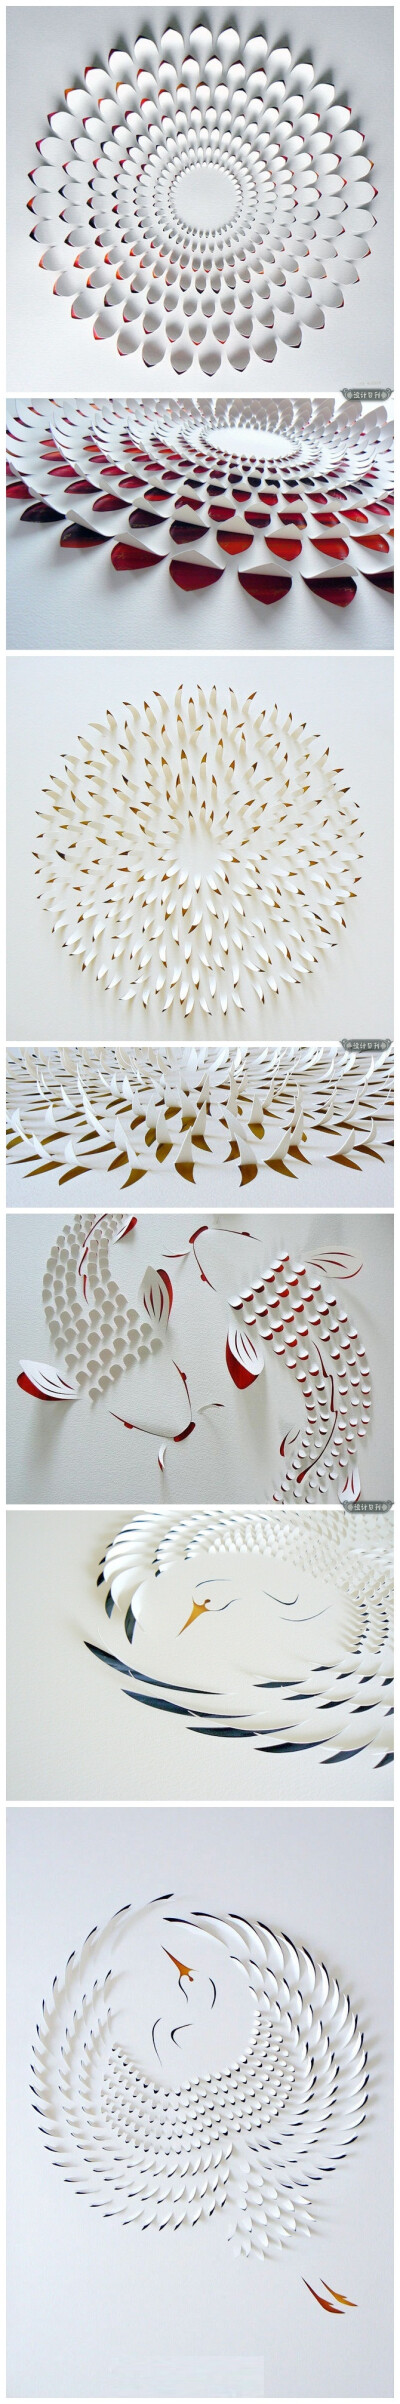 澳大利亚艺术家Lisa Rodden 的剪纸艺术